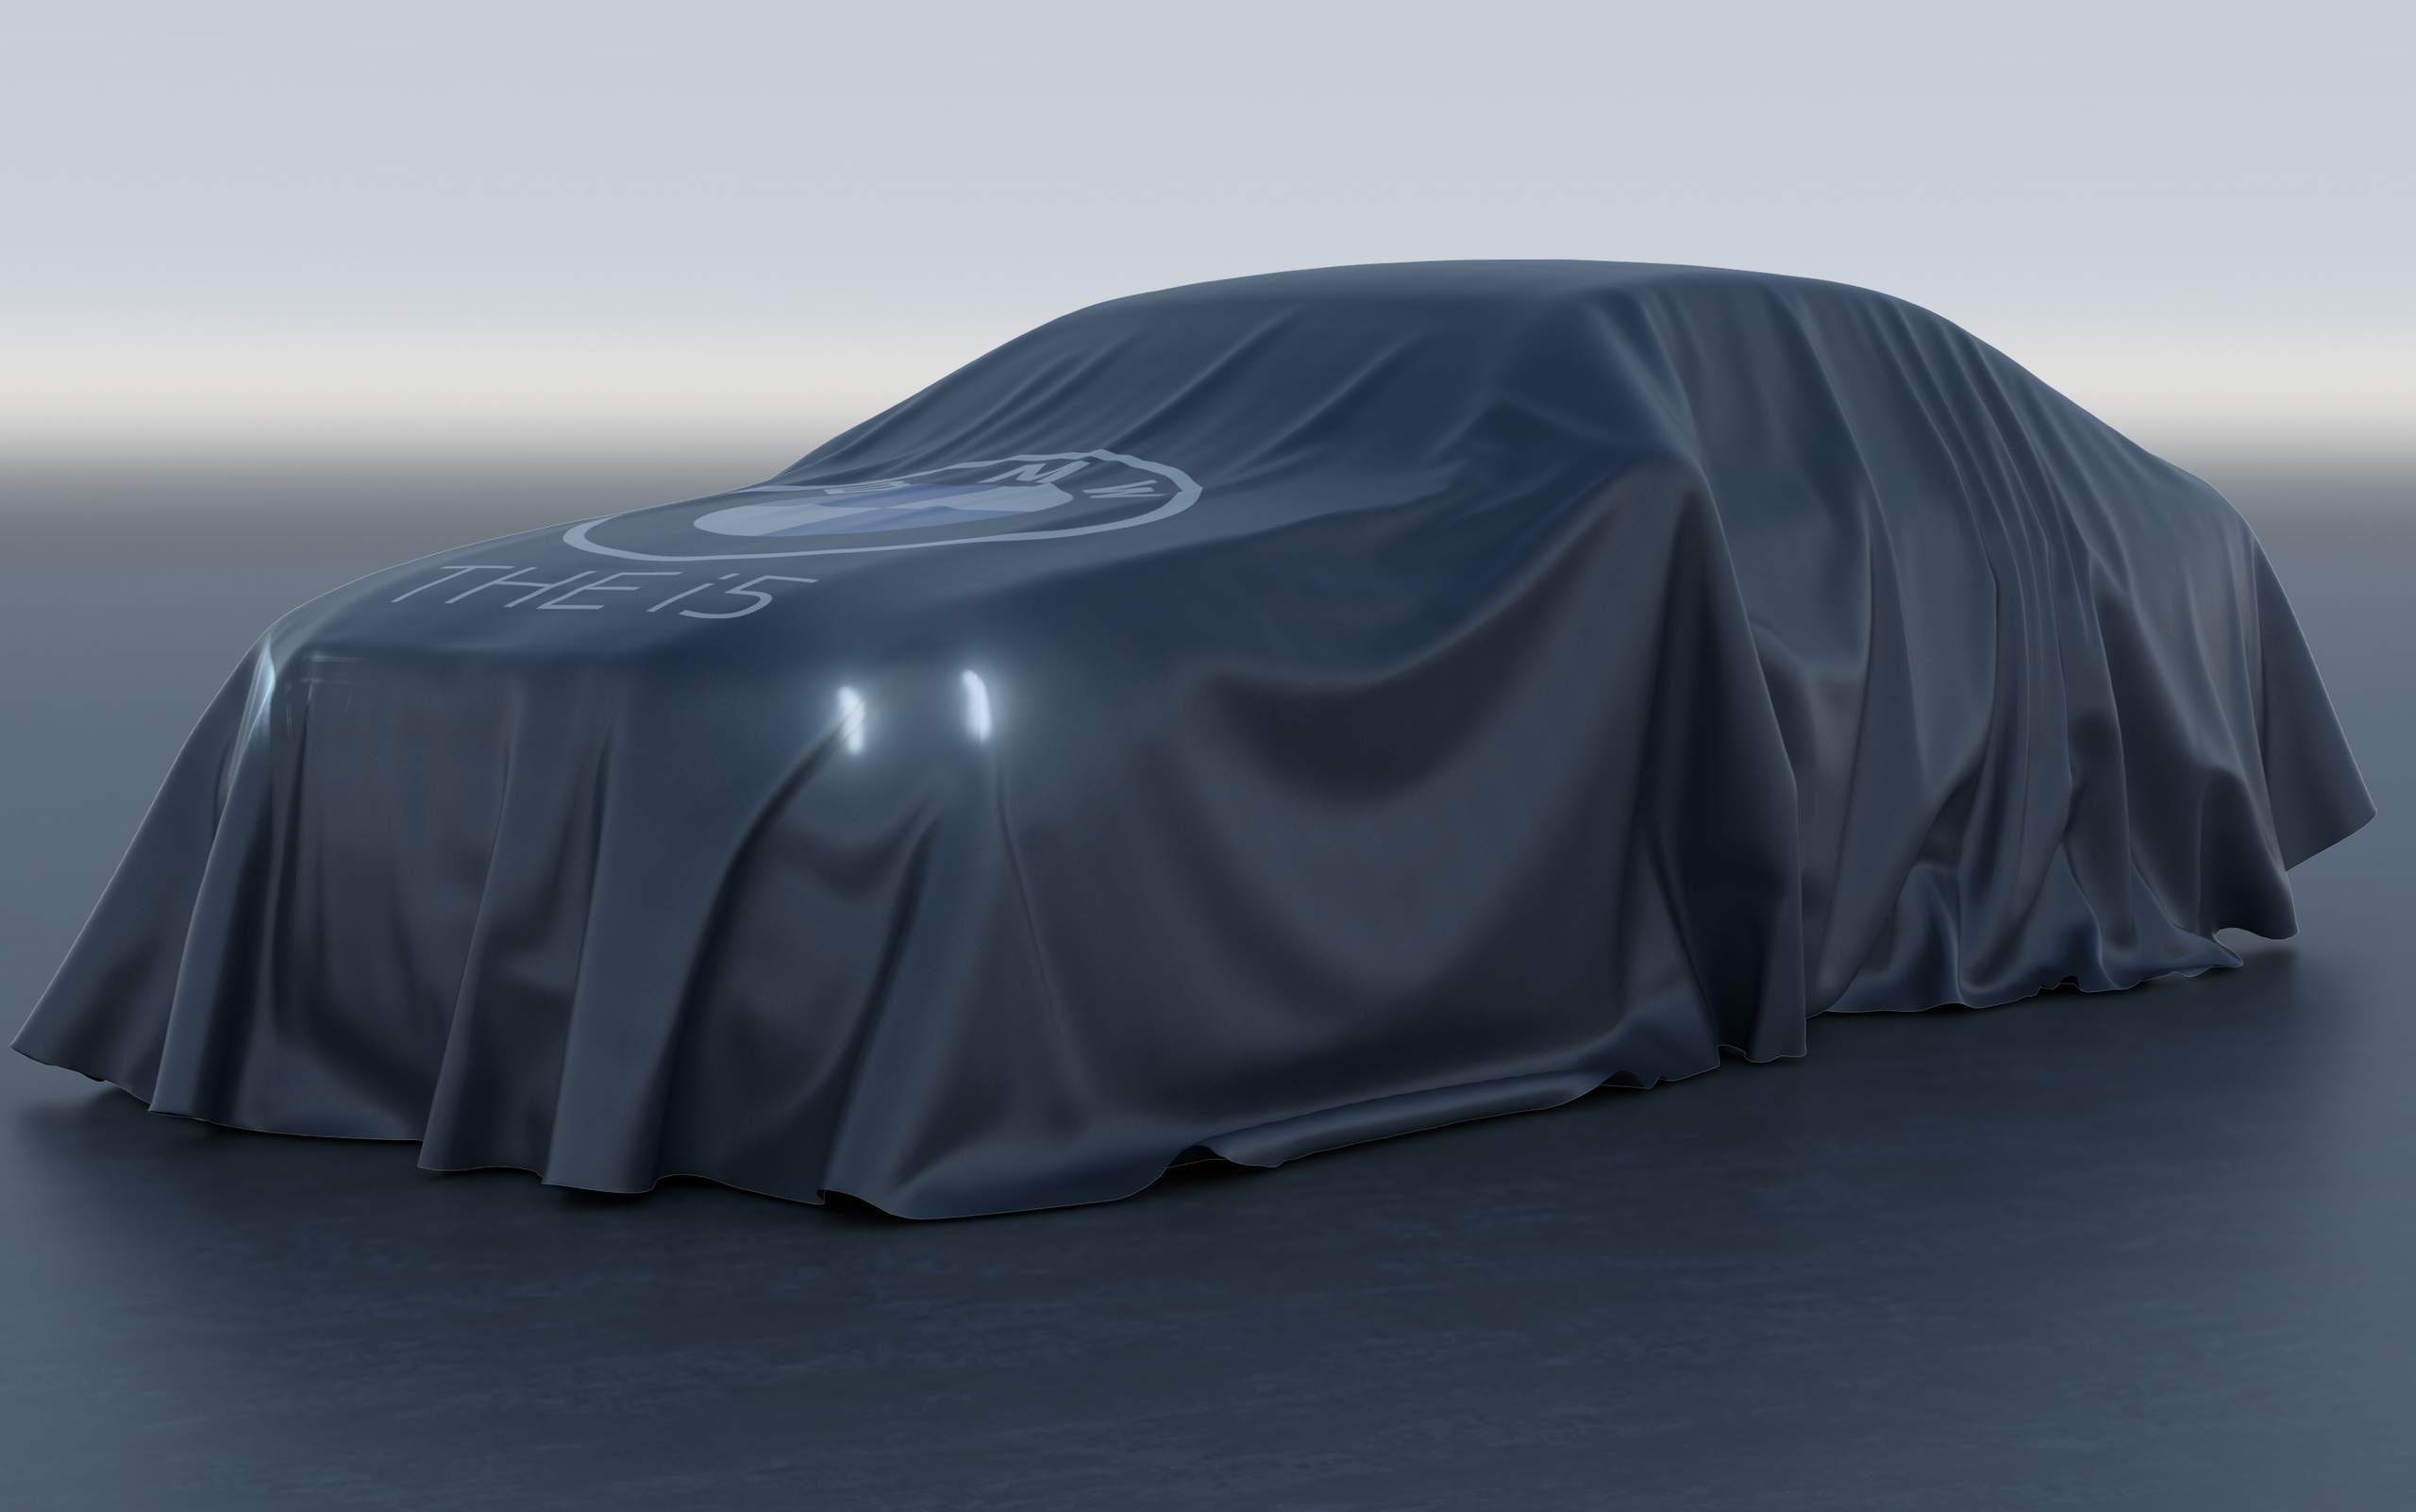 Novo BMW chega em outubro com versão 100% elétrica. Adivinha qual modelo será?